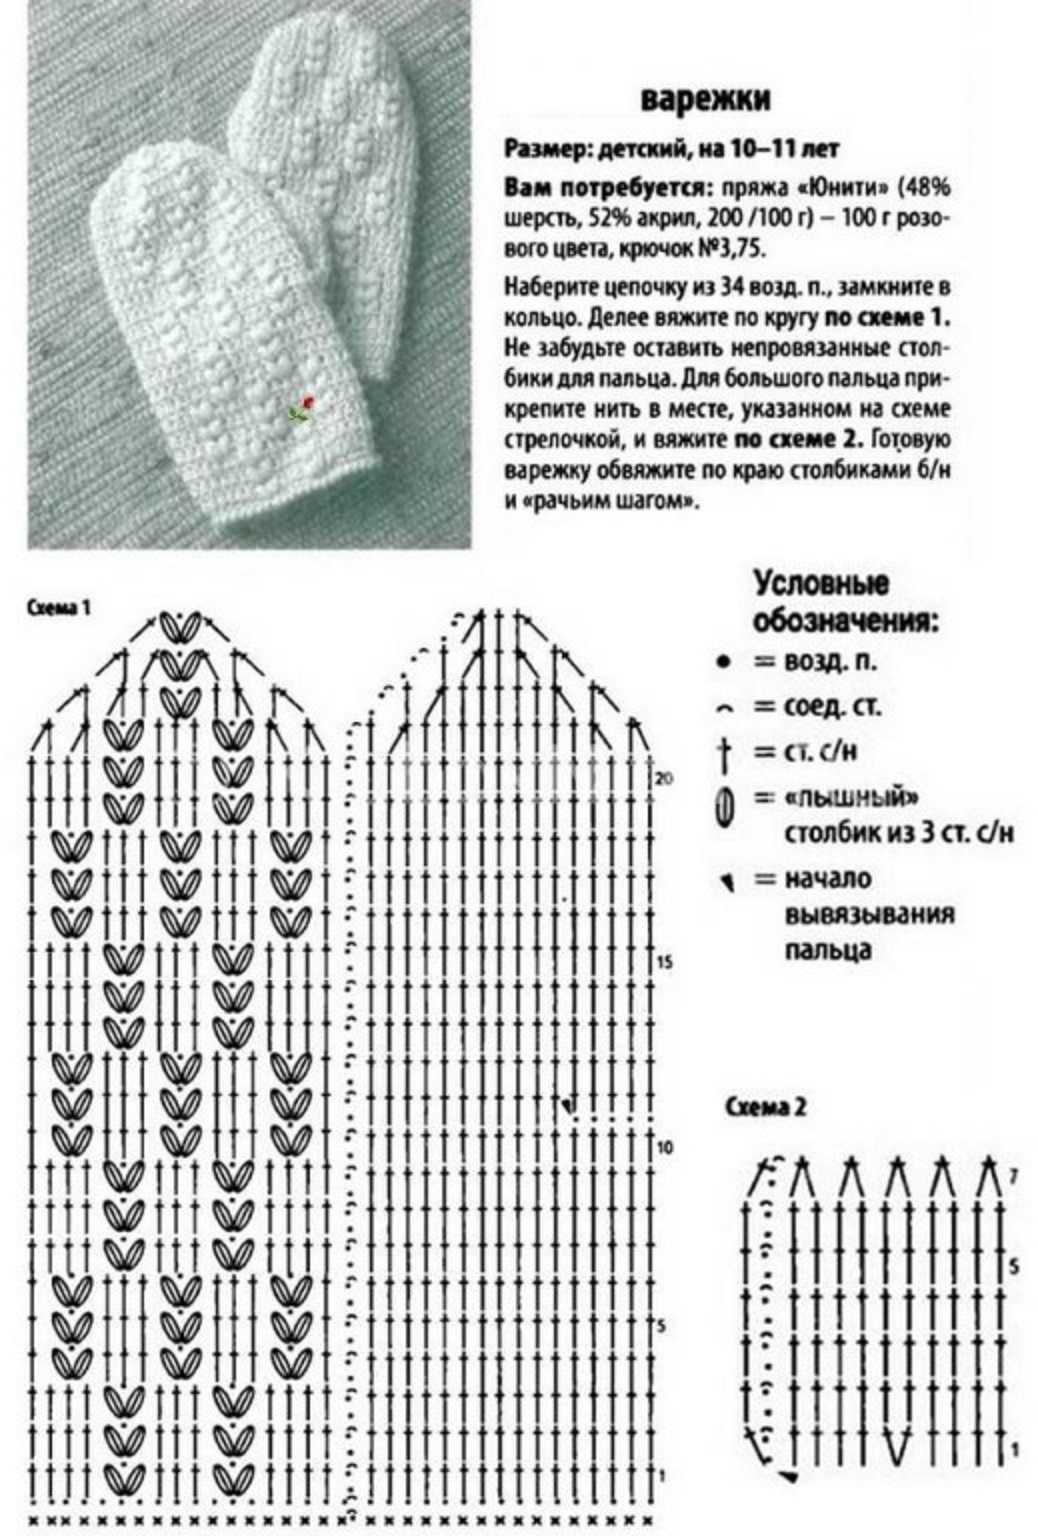 Варежки спицами. подборка из 25 моделей варежек связанных спицами с описанием и схемами.,  вязание для детей